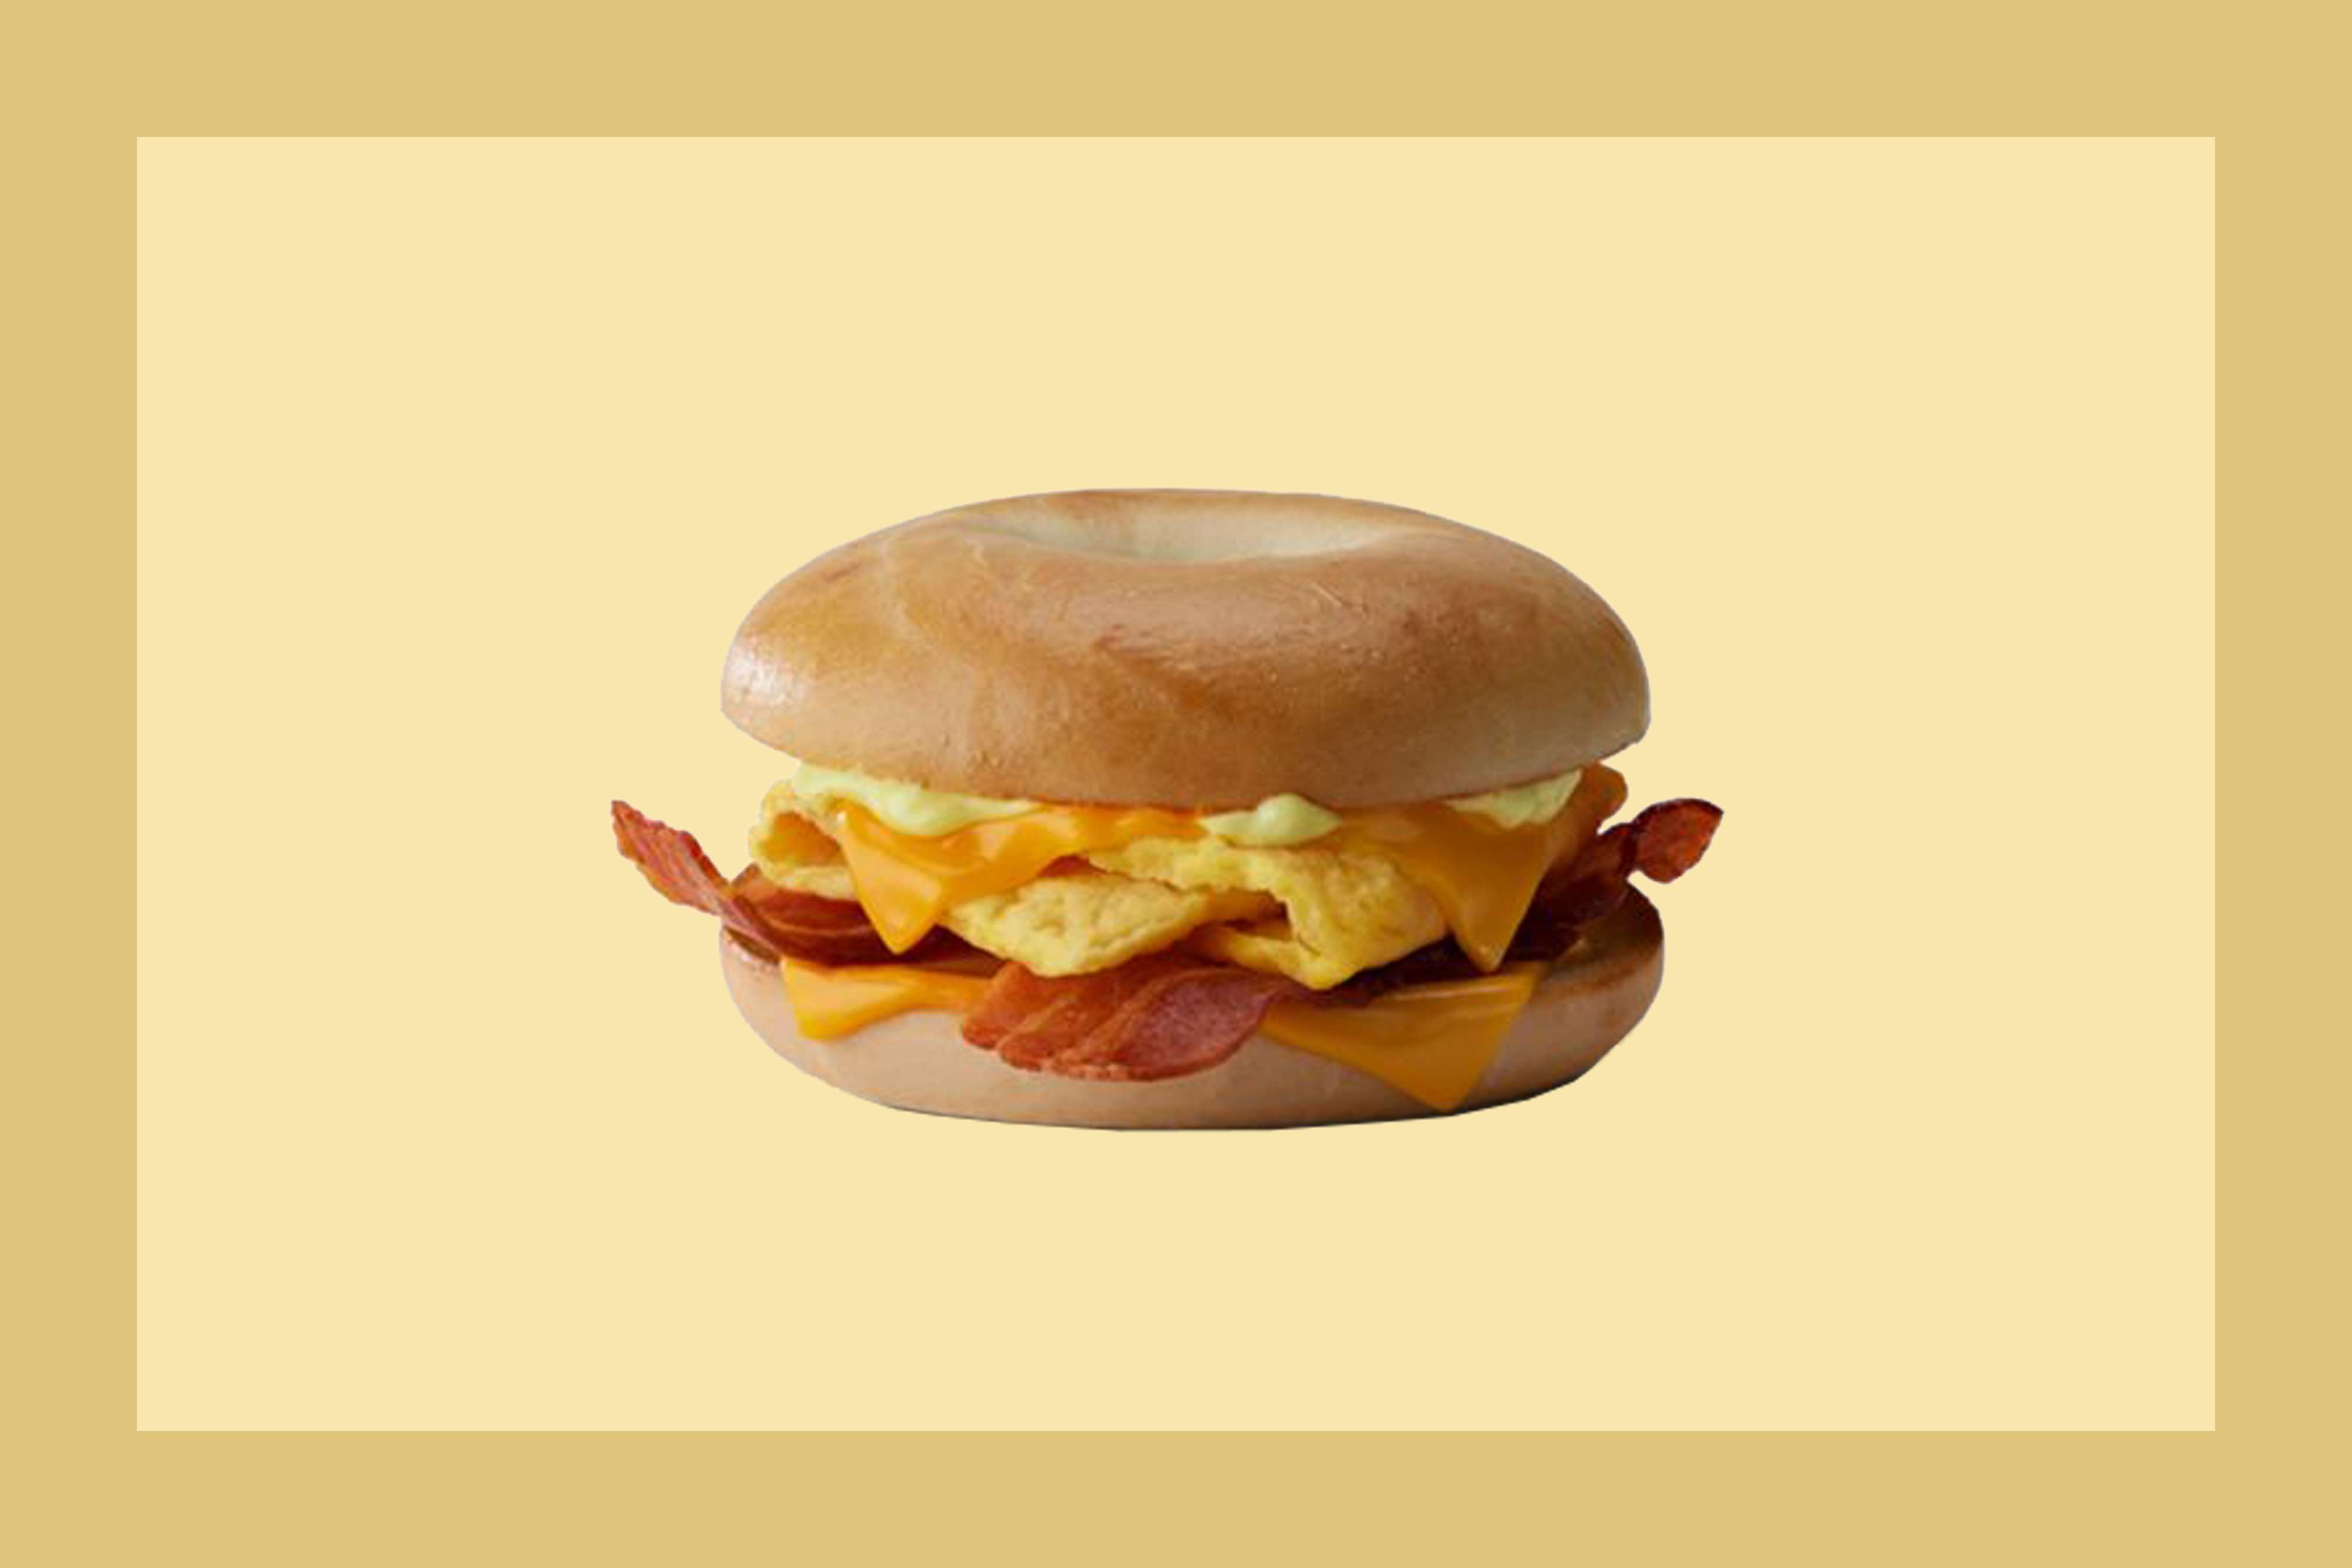 mcdonald’s brings back a fan-favorite breakfast item after a 4-year hiatus